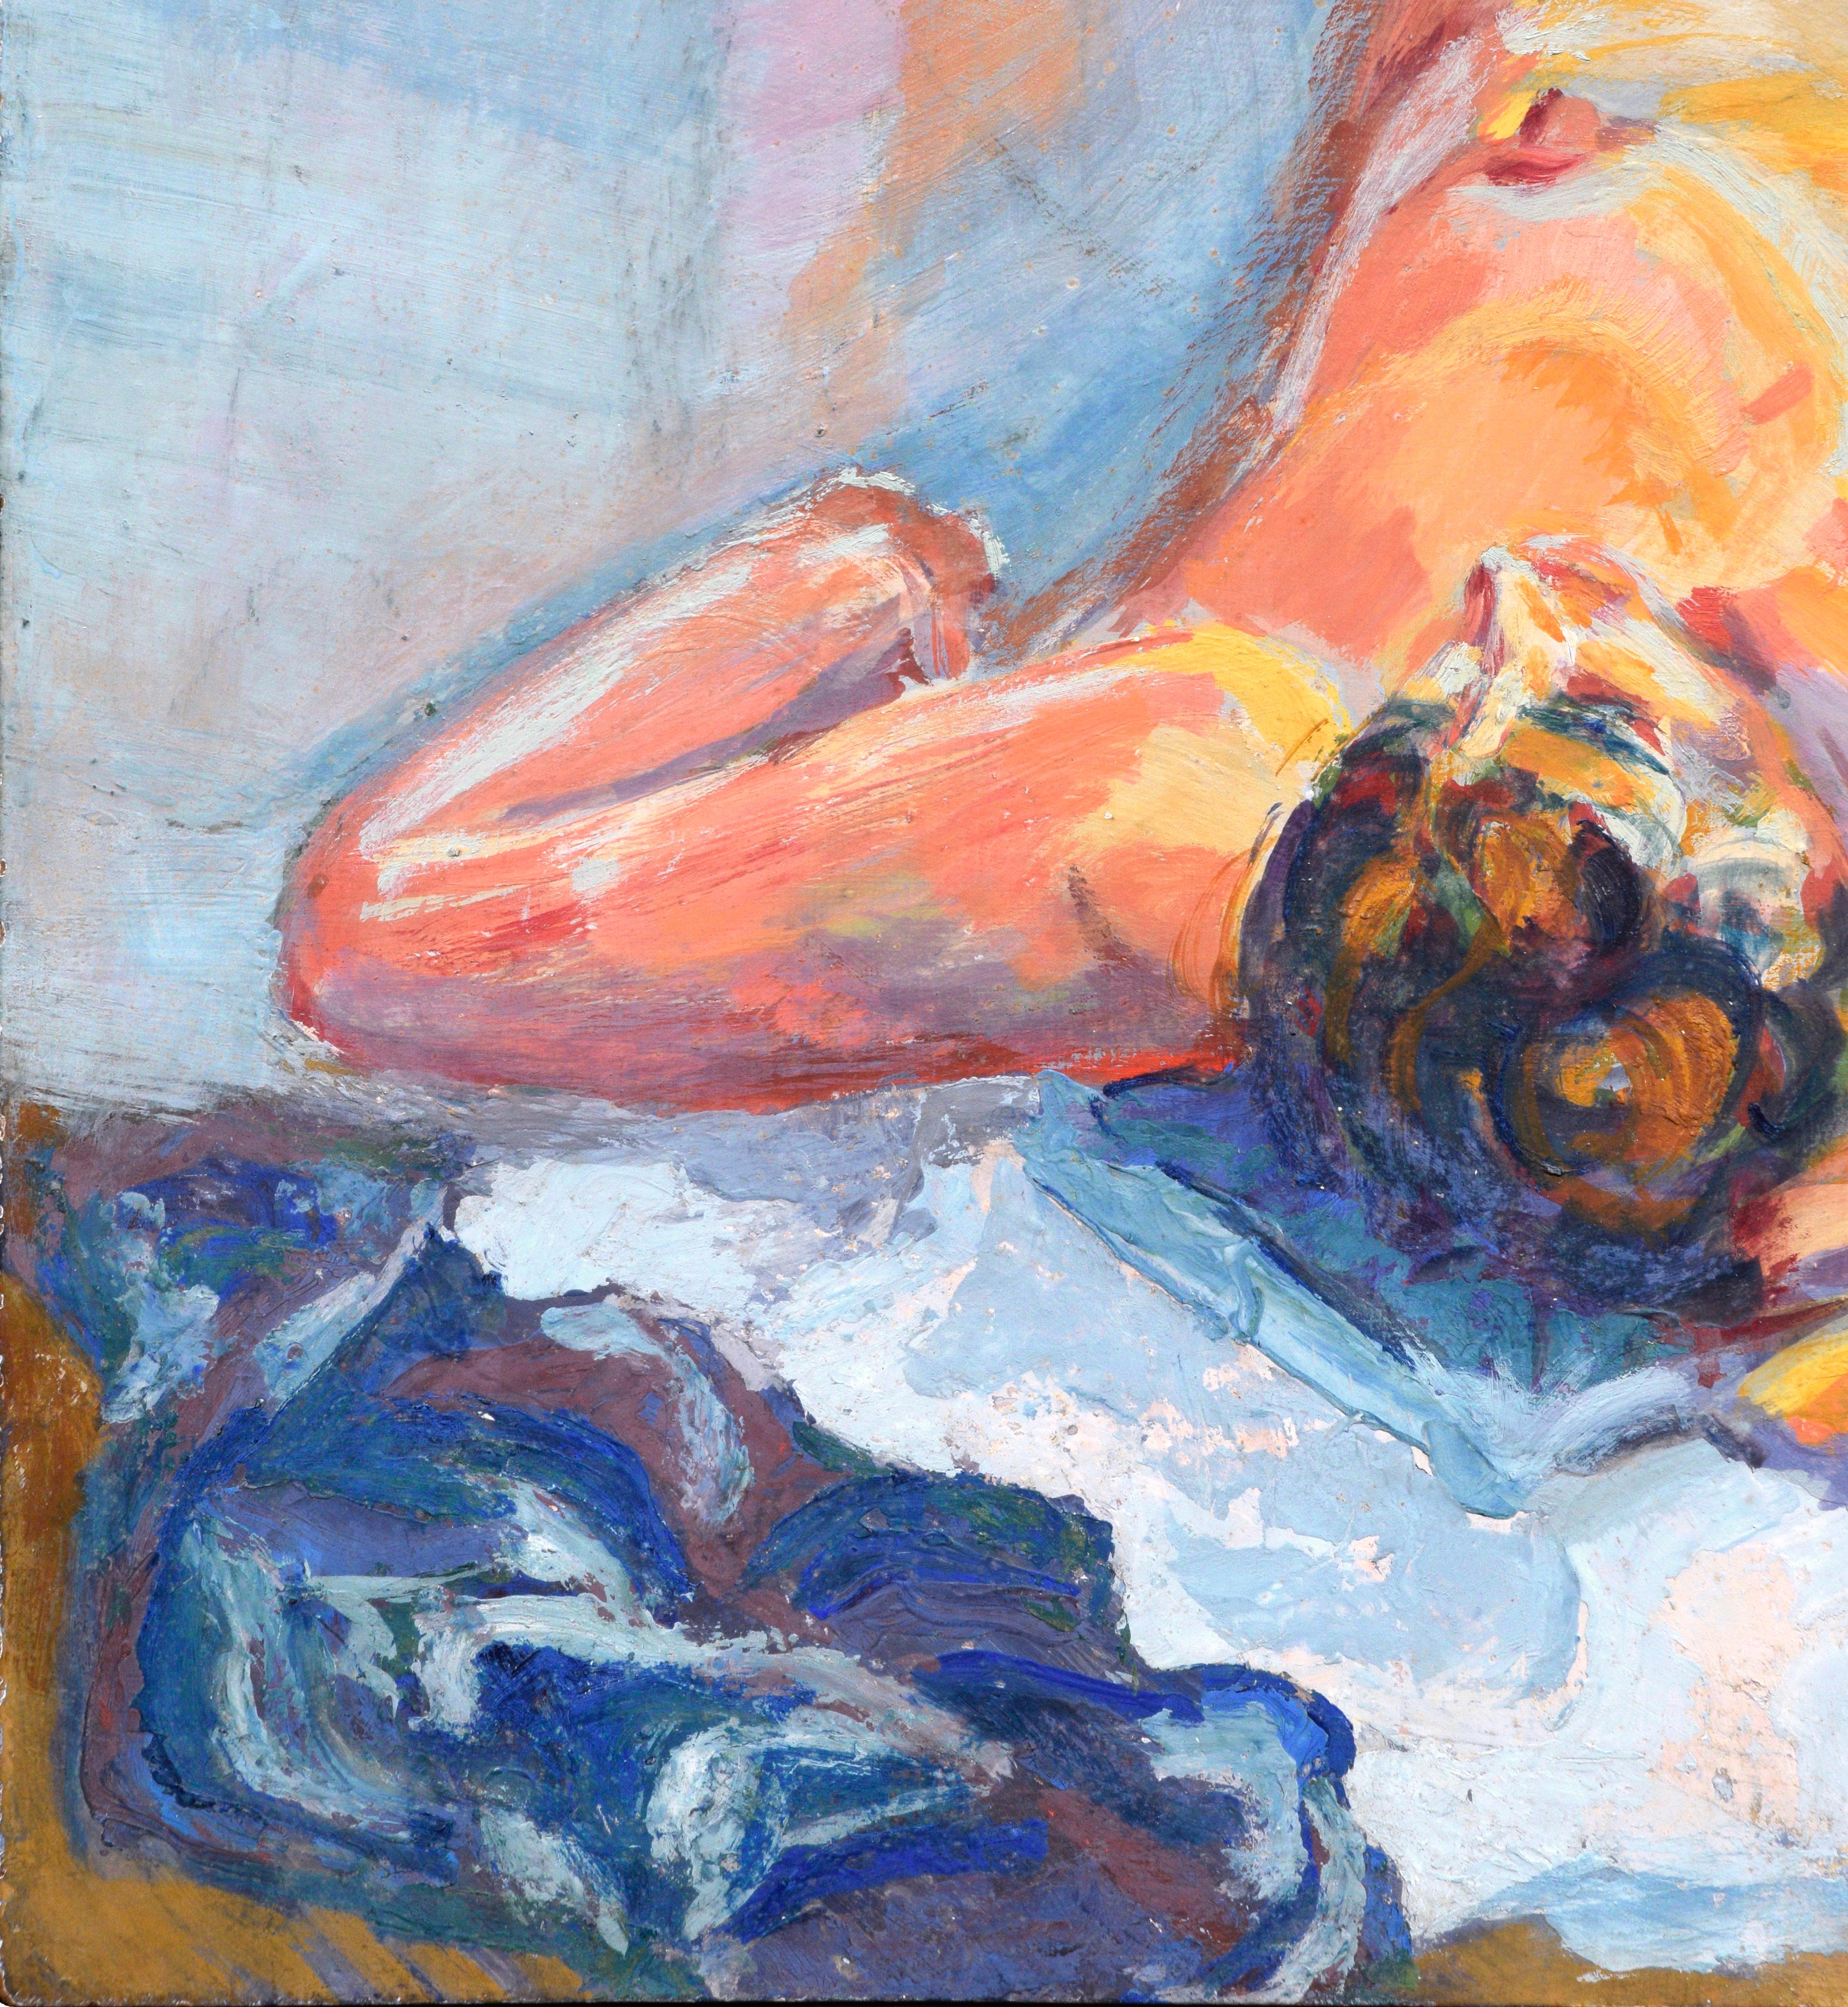 Liegender weiblicher Akt, figurativ, modernistischer Stil  – Painting von Unknown